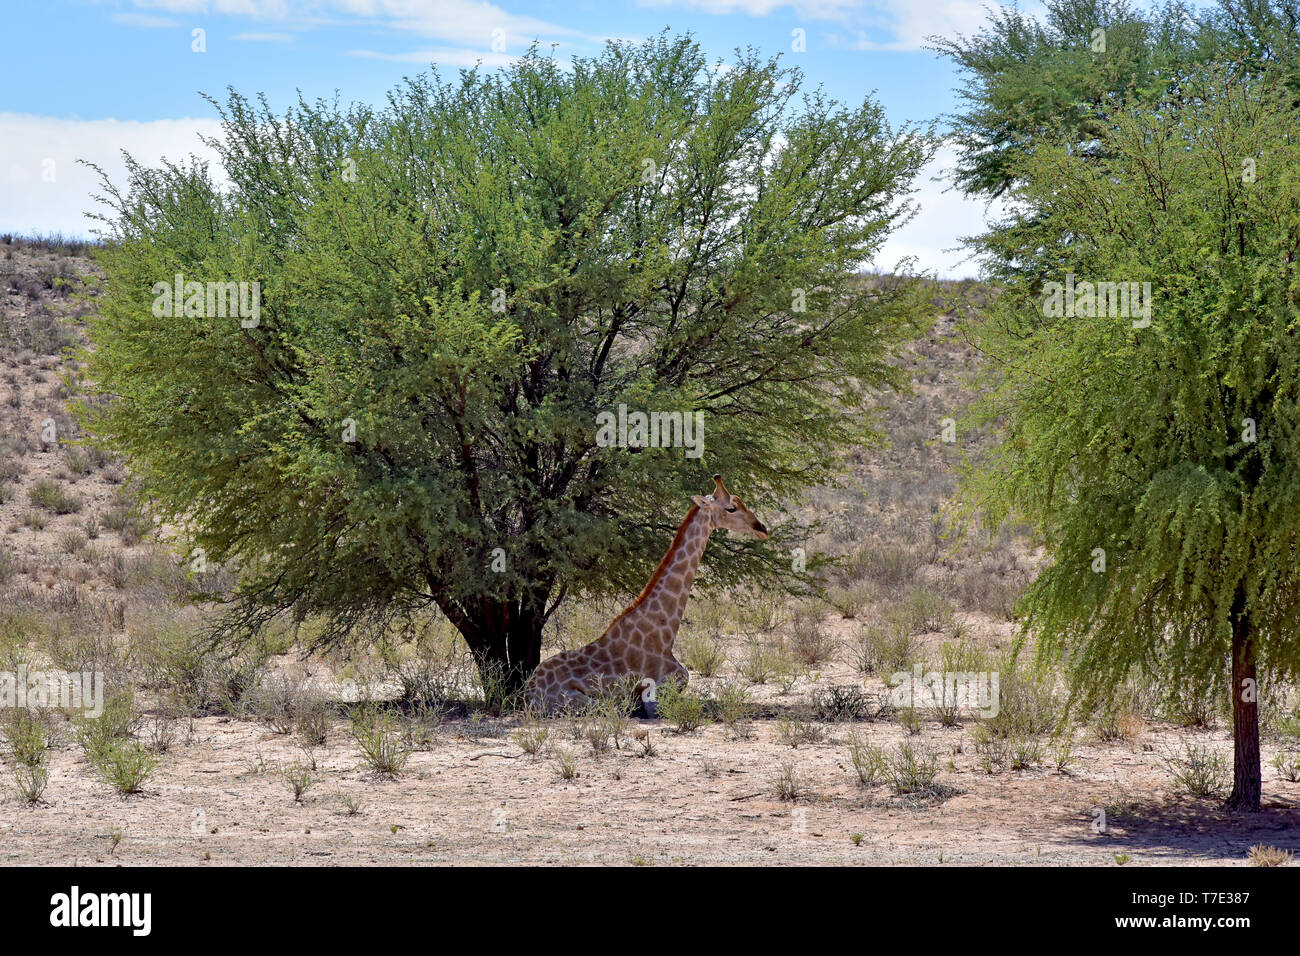 Durante il più grande calore del giorno, una giraffa nel Sud Africana di parte di Kgalagadi transfrontaliera parco nazionale si appoggia all'ombra di un albero, presa su 26.02.2019. La Giraffa (giraffa) appartiene alla pairhorses e con un peso di fino a 1600 kg e un'altezza del corpo di fino a sei metri (tori) è il più alto di terra-animale vivente dar. Nonostante la loro lunghezza, la giraffa della colonna vertebrale cervicale ha solo sette di conseguenza grandi vertebre, in cui il collo è detenuto da un solo tendine. Oggi, le giraffe sono presenti solo in zone di savana a sud del Sahara, versusden paludose sono generalmente evitati. Foto: Matthias Foto Stock